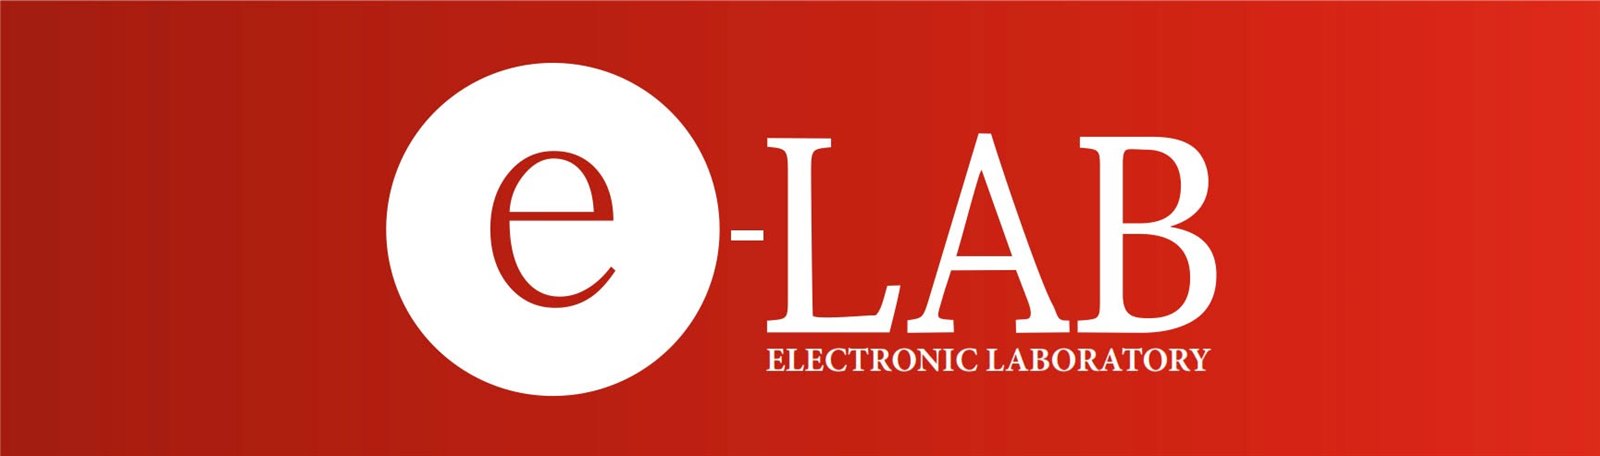 Аккумуляторы E-LAB доступны в продаже AKBMOSCOW - сеть магазинов аккумуляторов